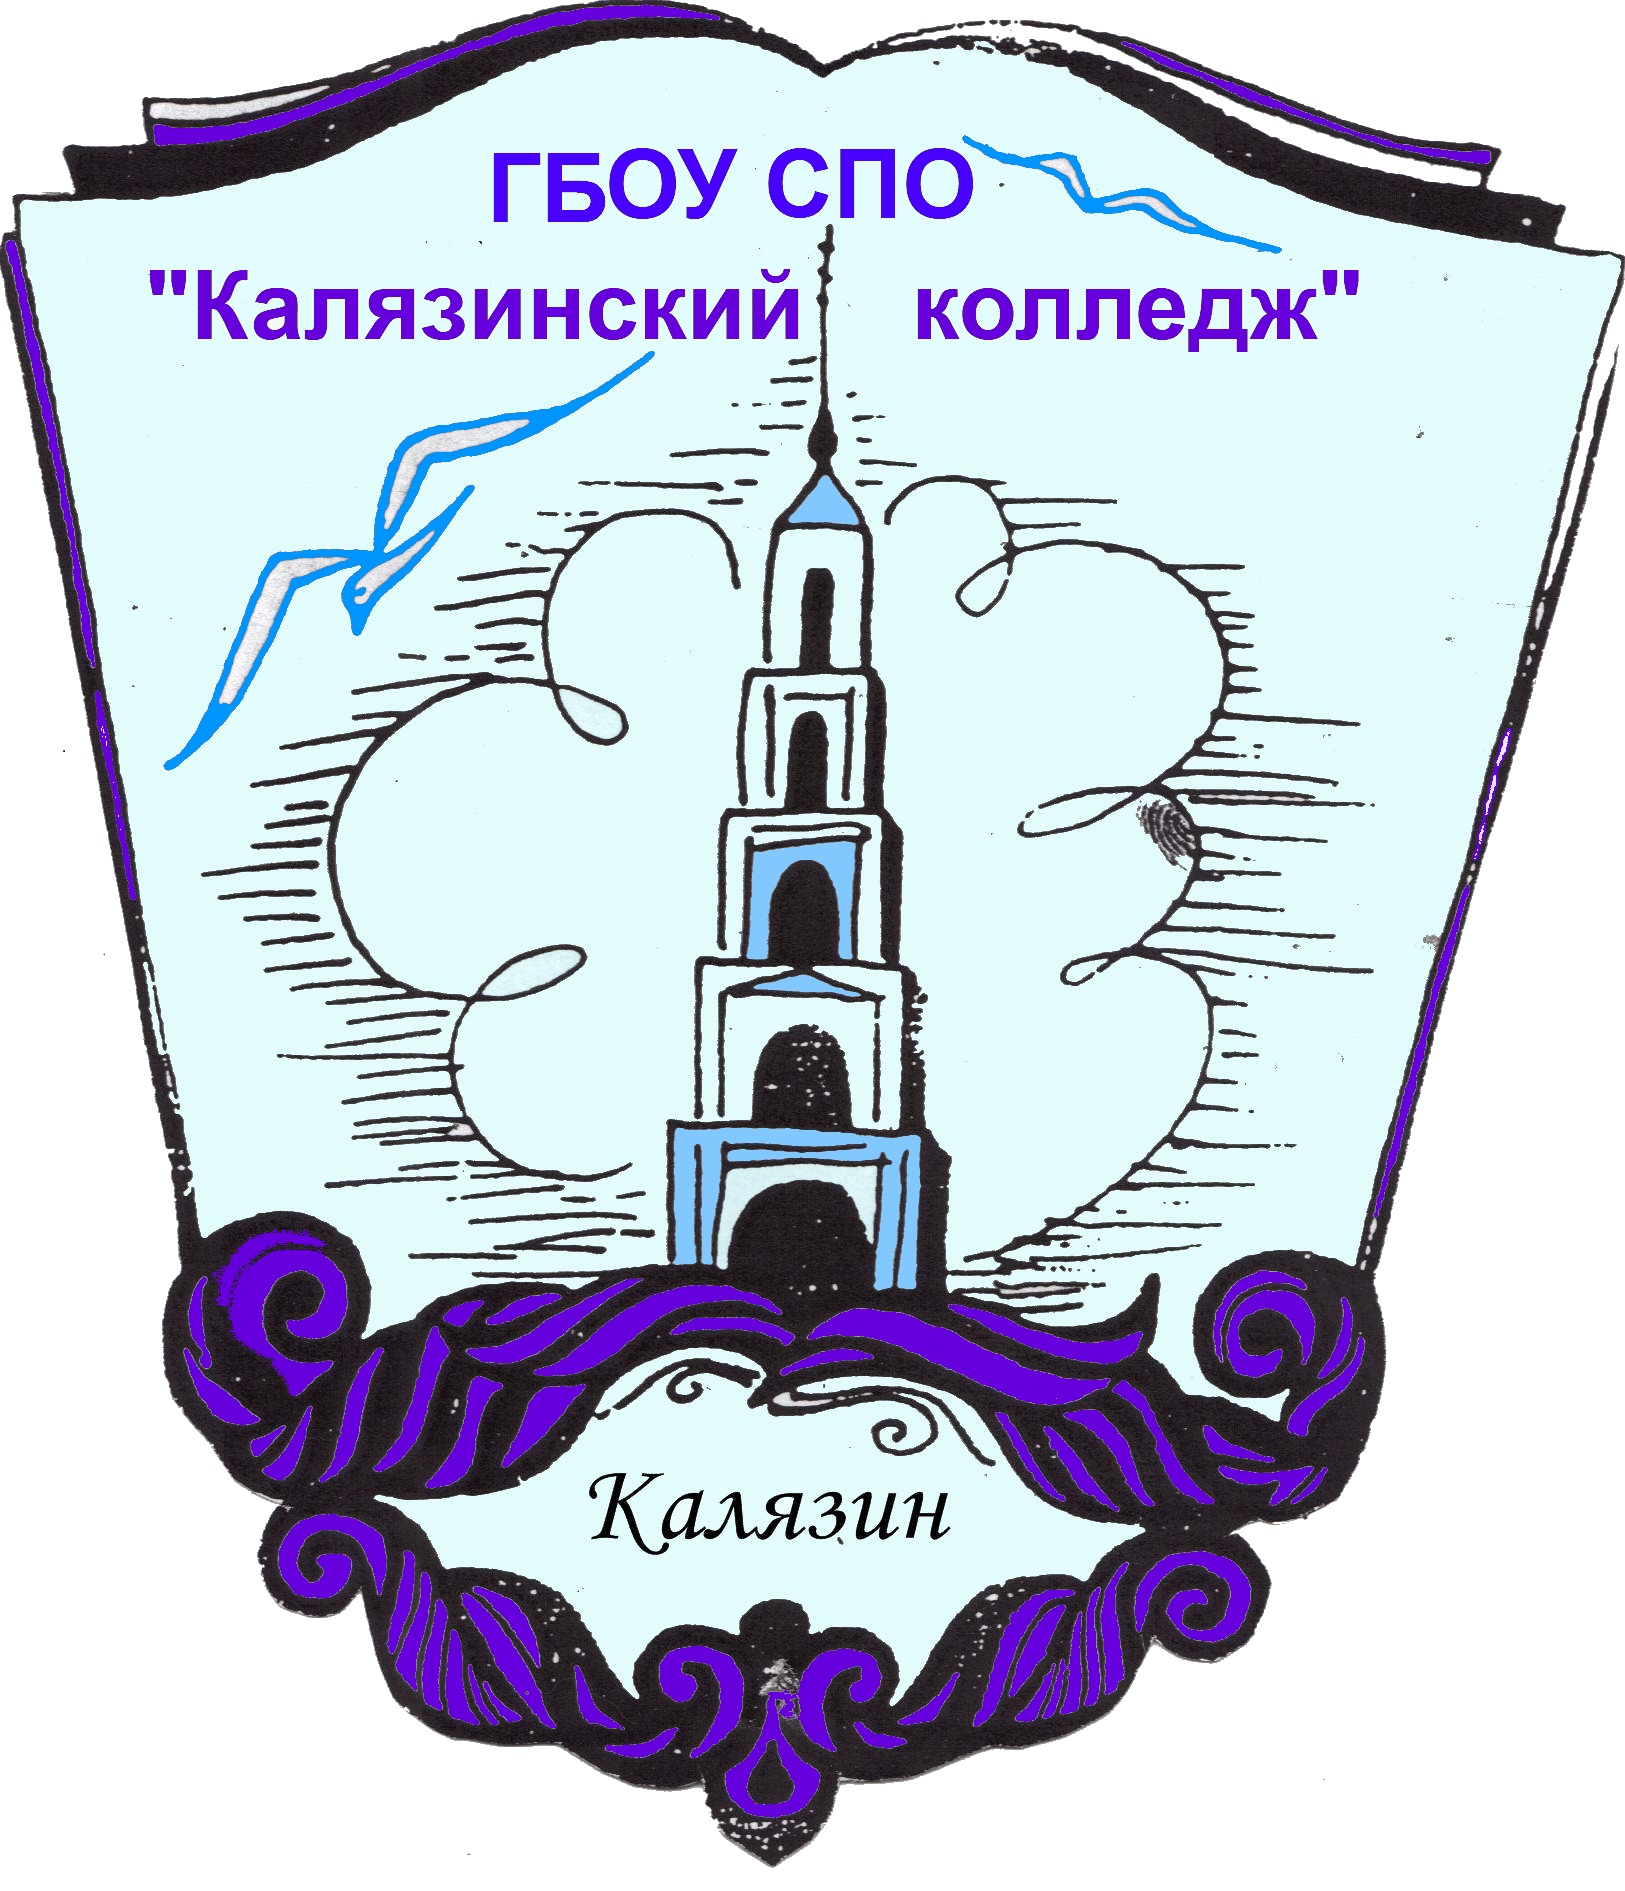 Логотип (Калязинский колледж)